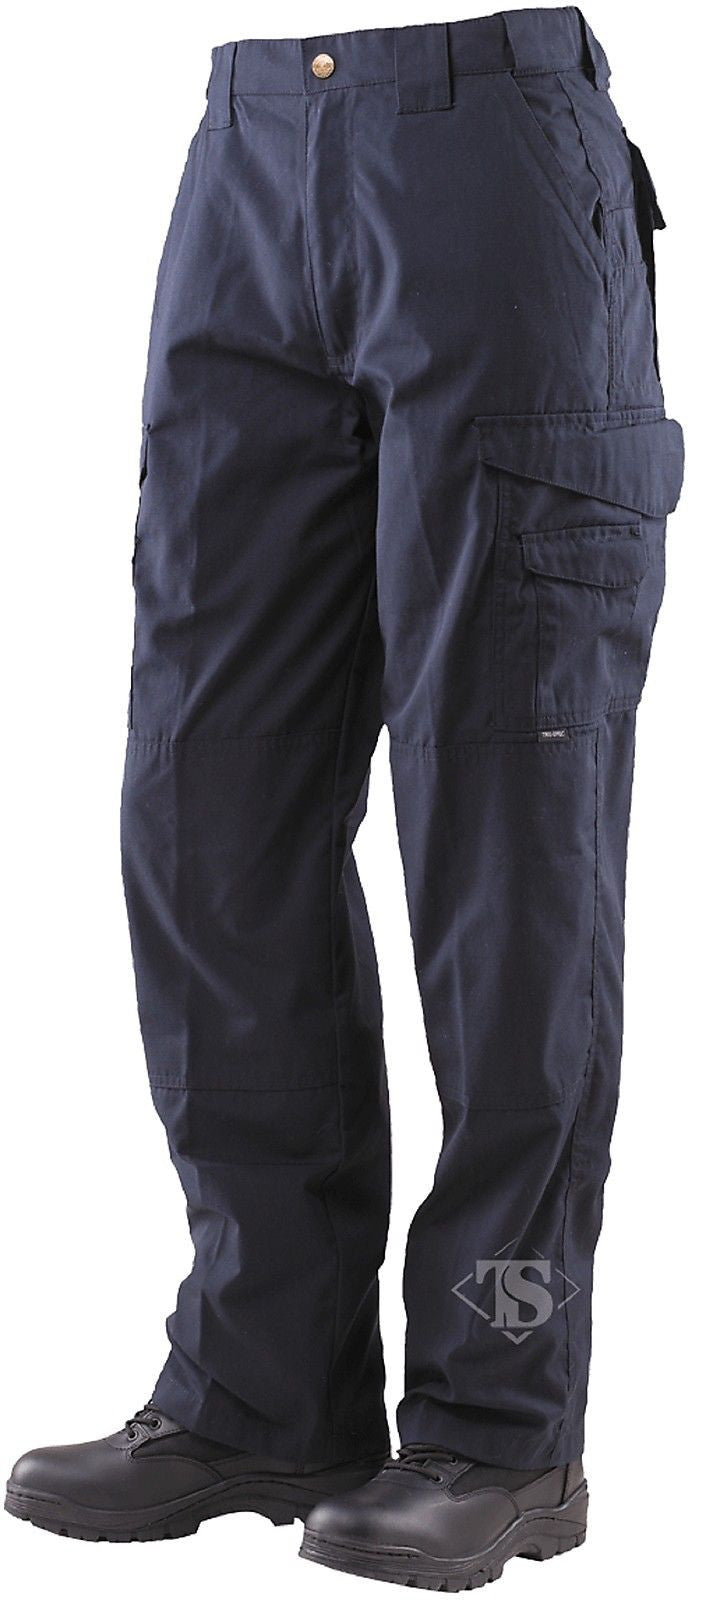 Tru-Spec Tactical Response Uniform Pants